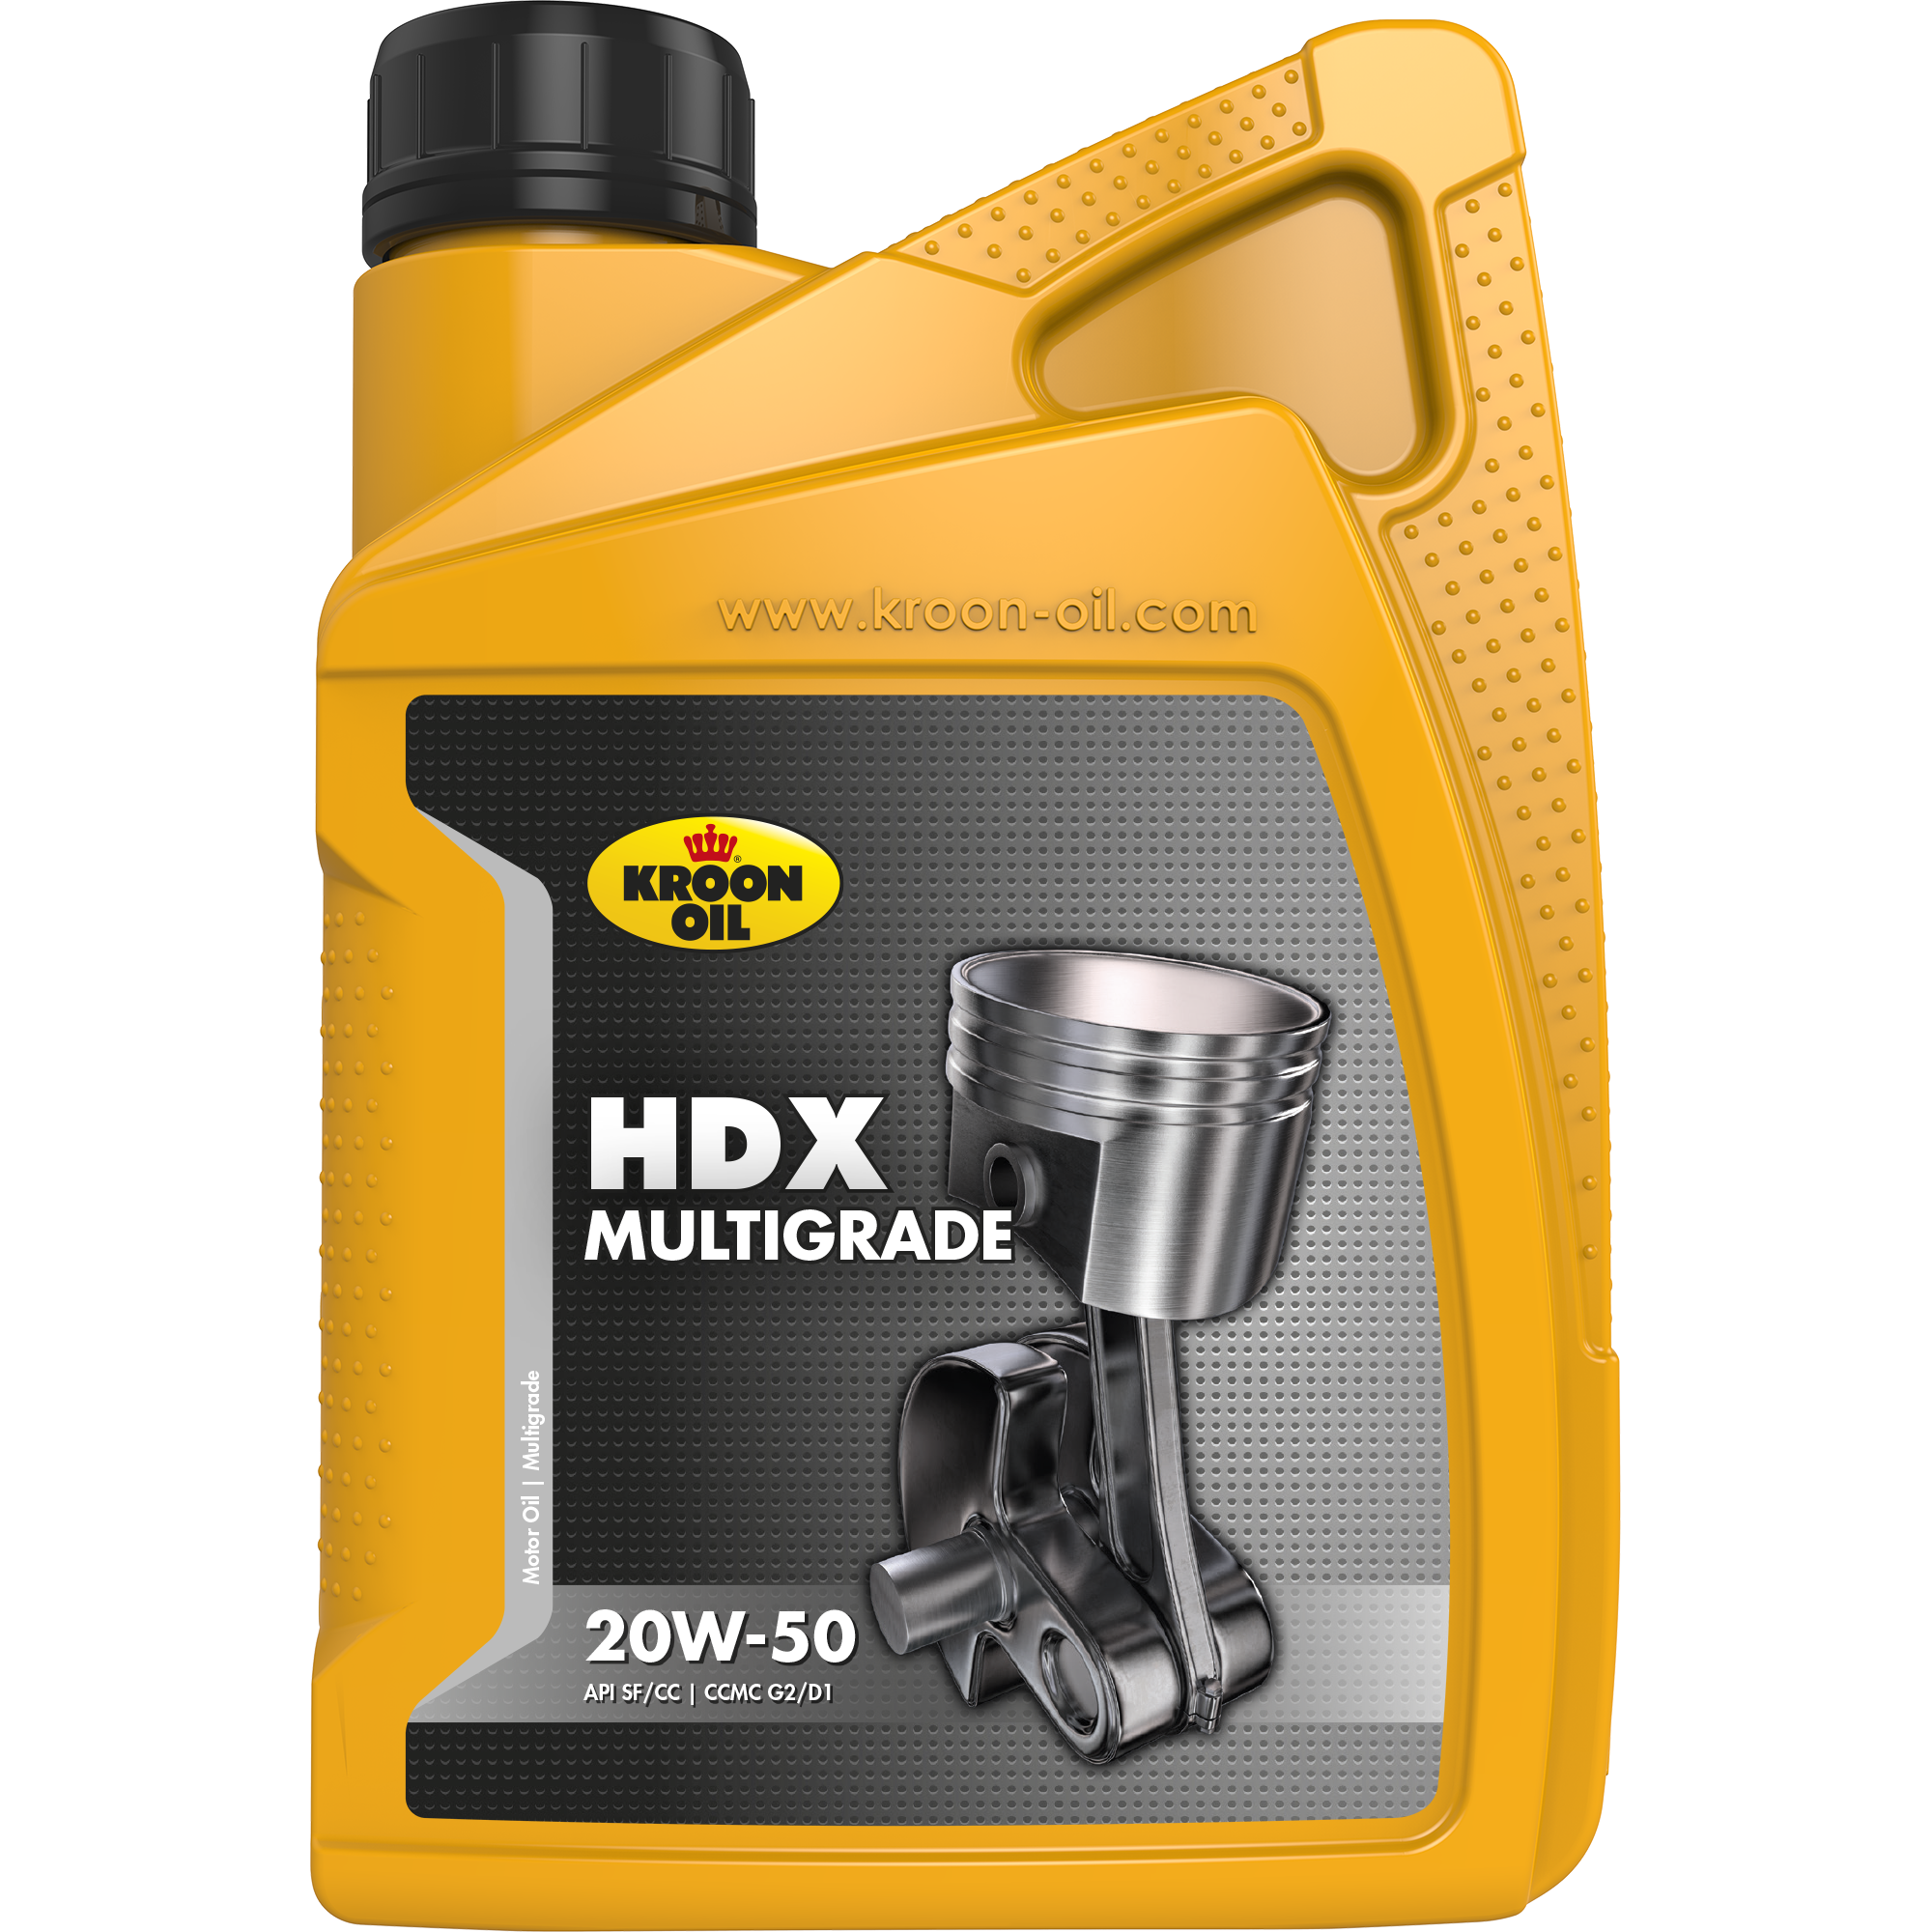 00201-1 HDX 20W-50 is een motorolie gebaseerd op hoogwaardige solvent geraffineerde basisoliën.